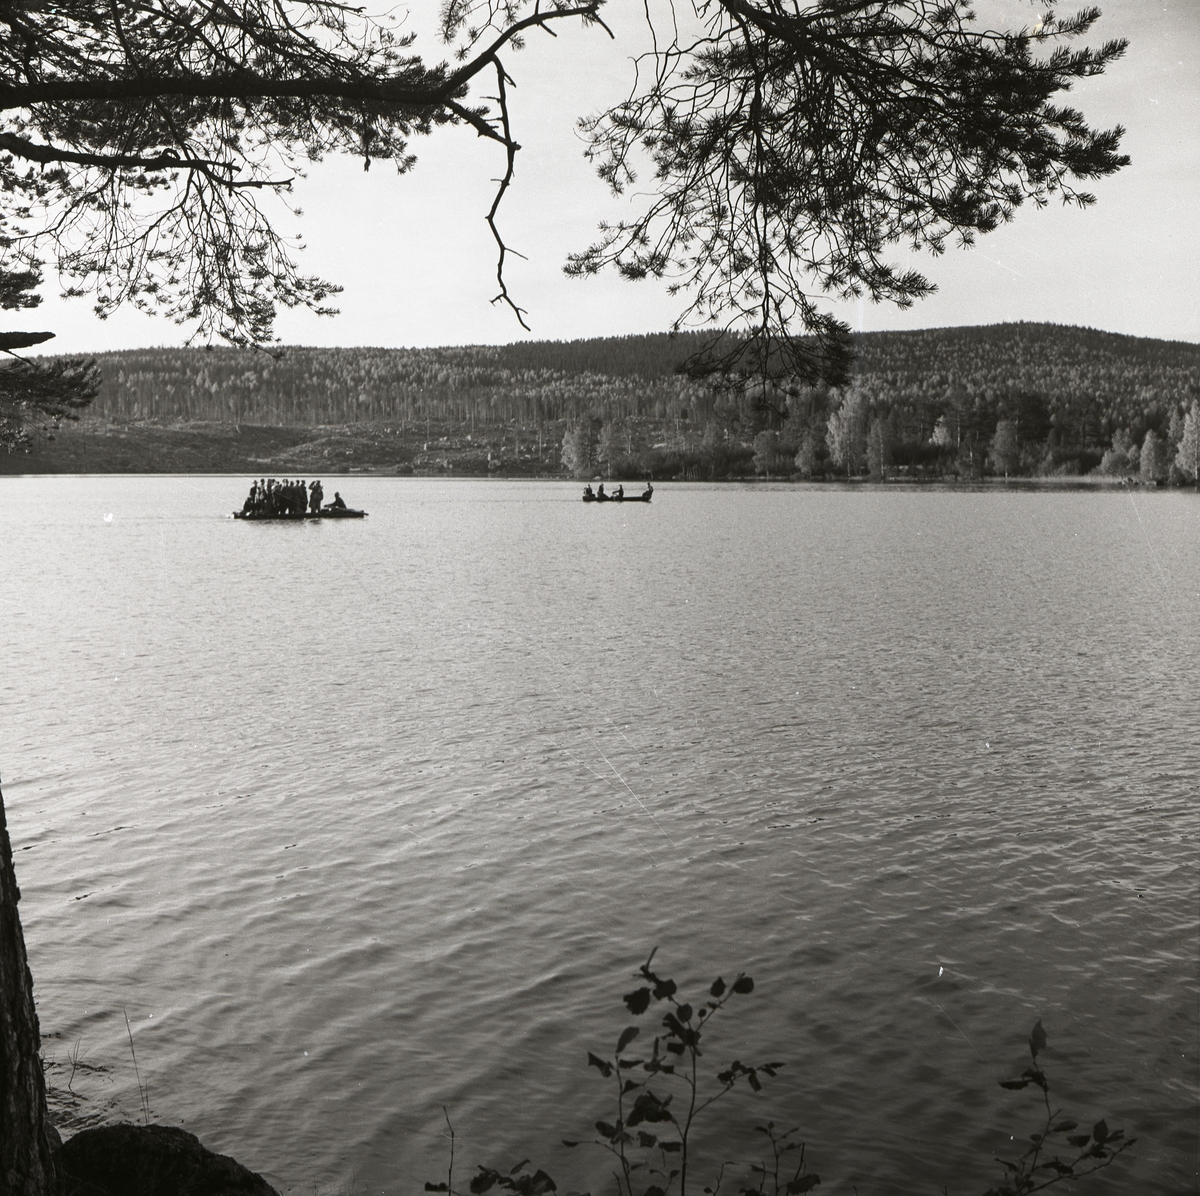 En båt och en flotte flyter på sjön Stornien, 6 oktober 1957.